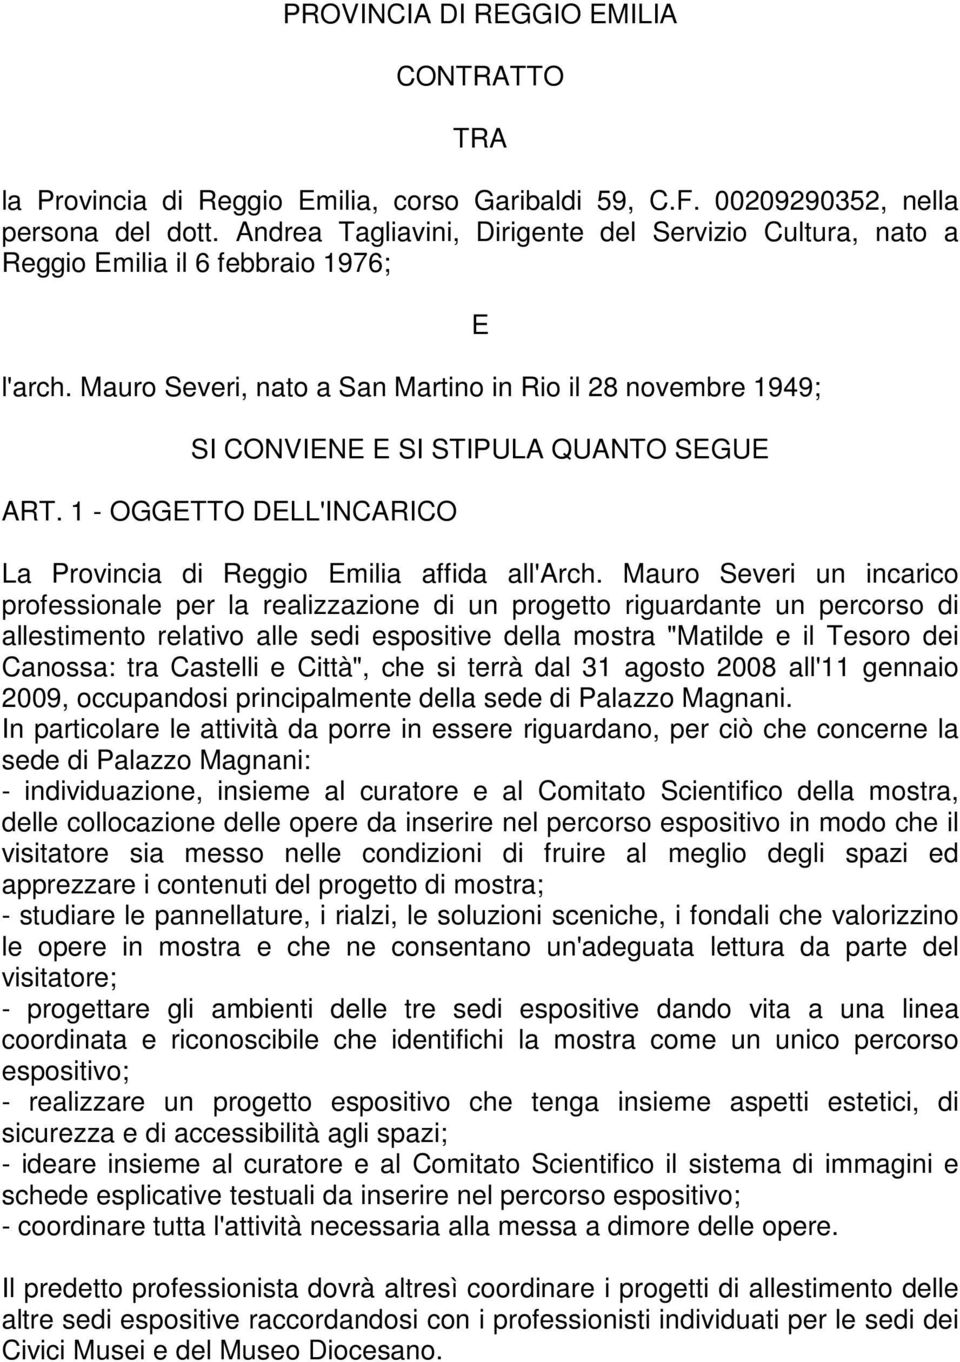 Mauro Severi, nato a San Martino in Rio il 28 novembre 1949; E SI CONVIENE E SI STIPULA QUANTO SEGUE ART. 1 - OGGETTO DELL'INCARICO La Provincia di Reggio Emilia affida all'arch.